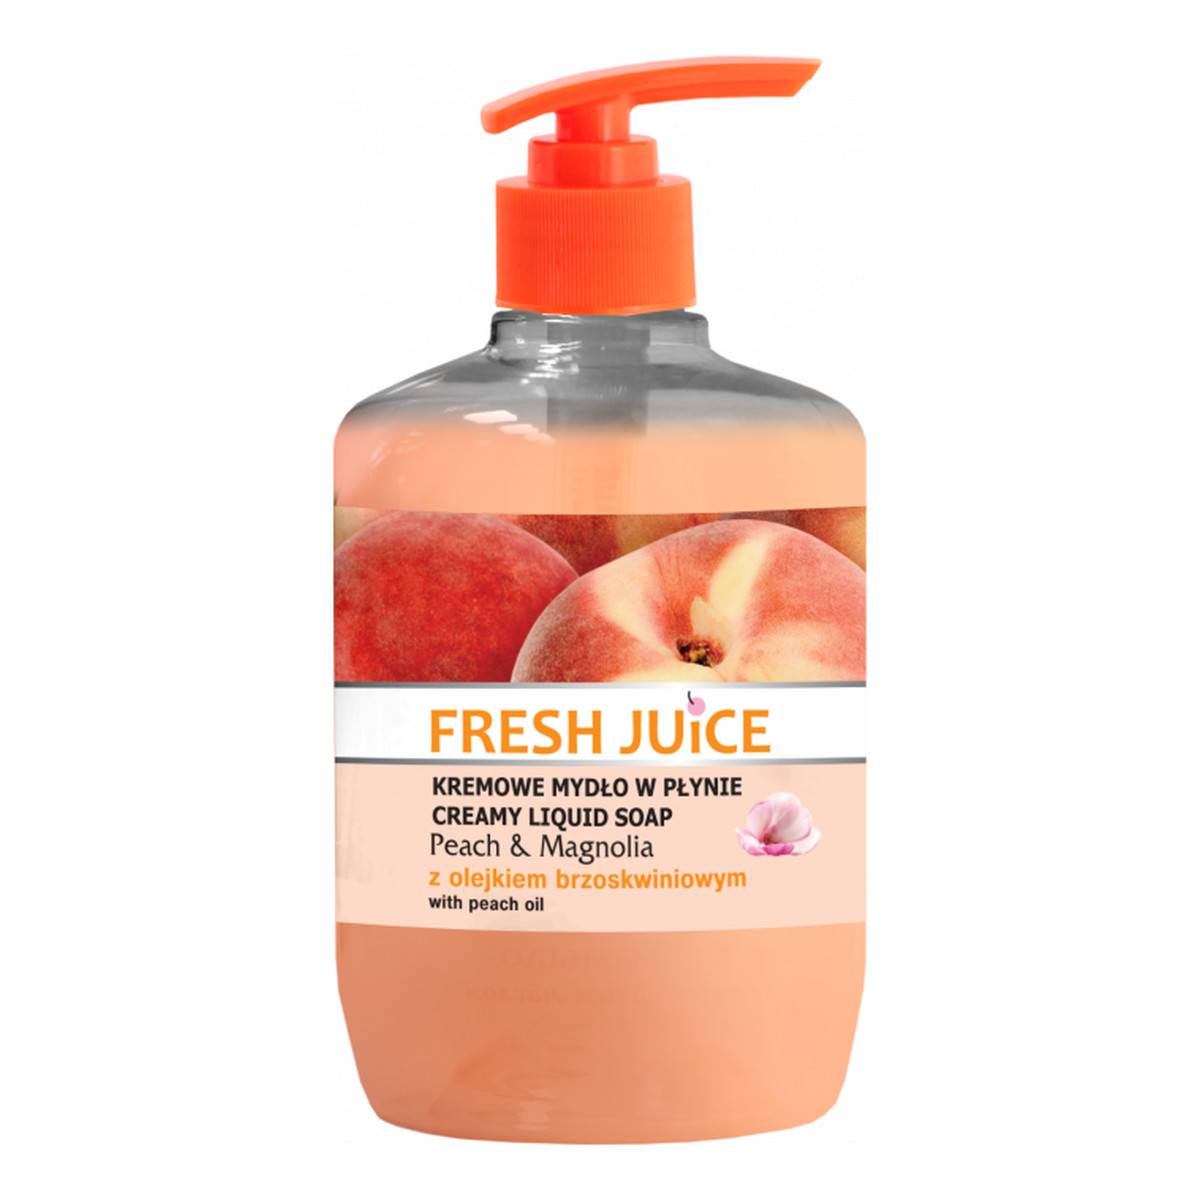 Fresh Juice Peach & Magnolia Kremowe Mydło W Płynie O Zapachu Brzoskwini I Magnolii 460ml